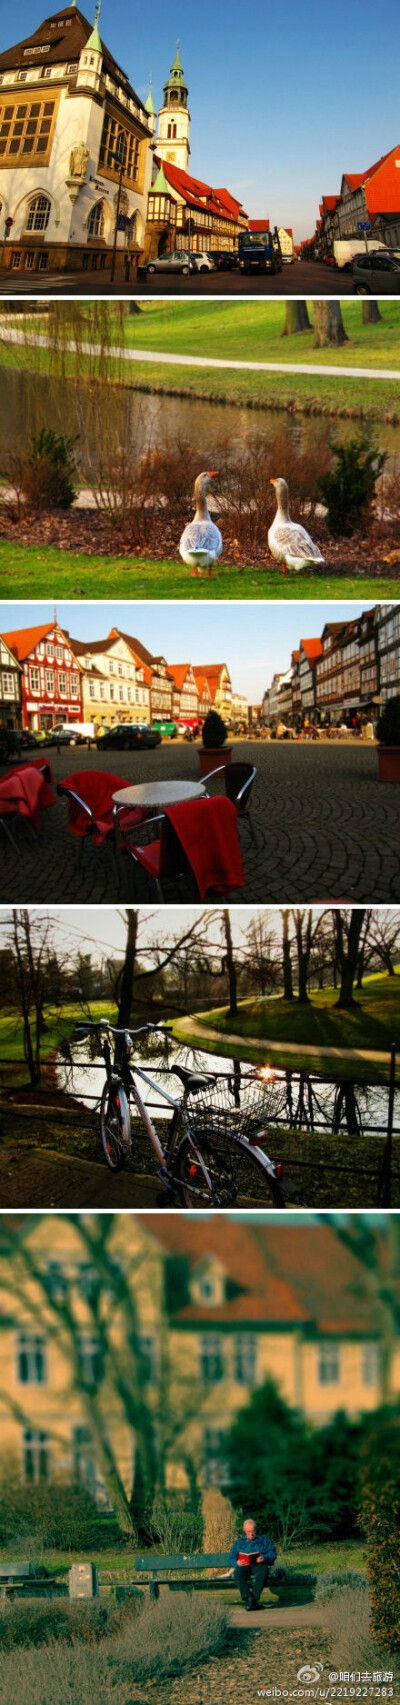 德国小镇Celle，明媚的午后，在车站、在广场、在河边，在每个人潮涌动的地方，都有一个安静的小角落 。